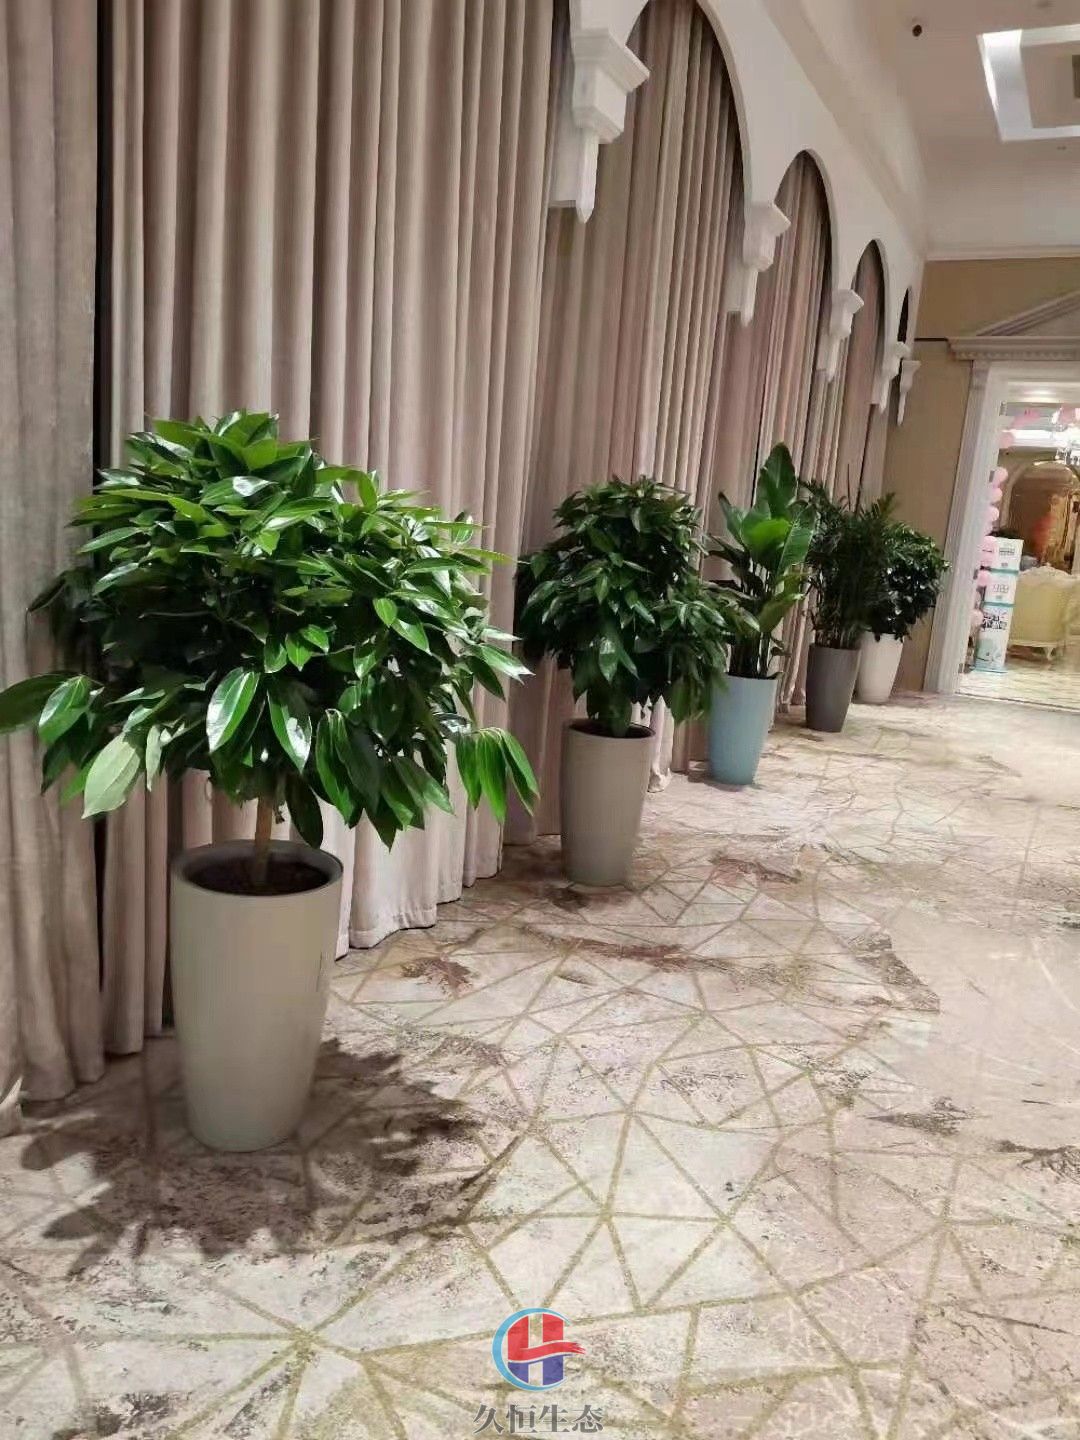 平湖酒店走廊花卉绿植摆放